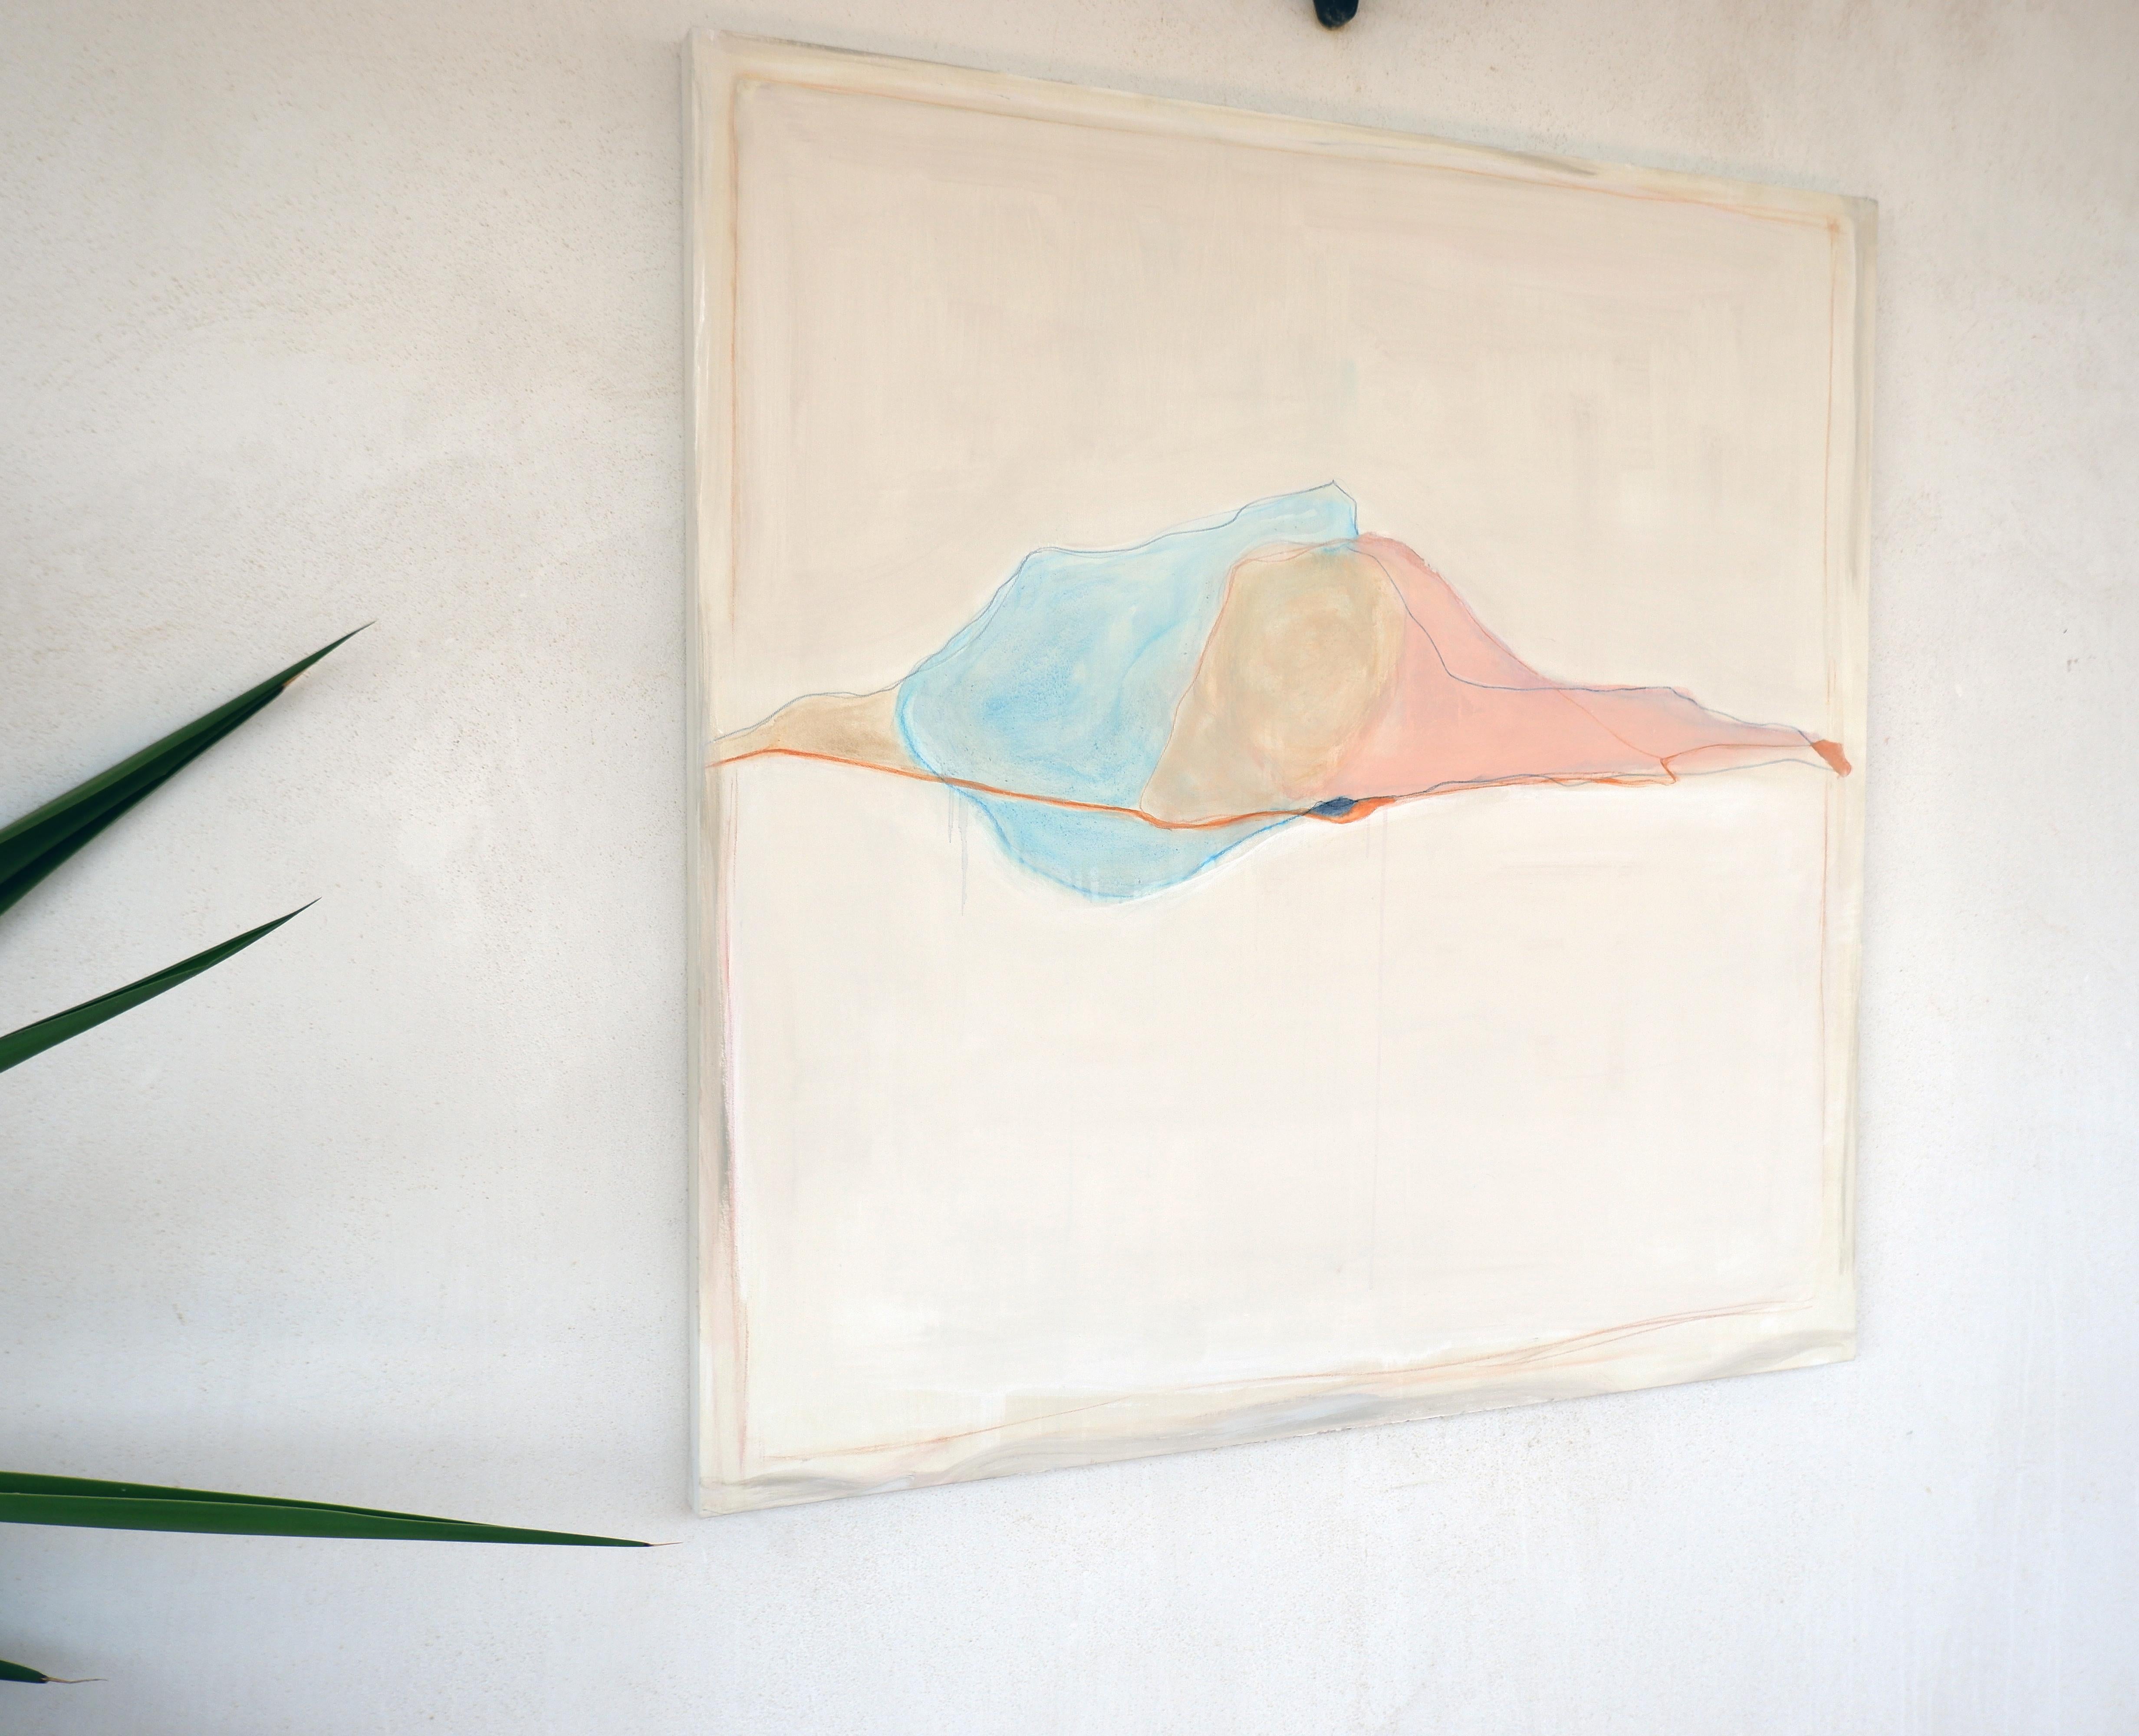  Abstrakte Landschaft , Weißtöne , Minimalistisches Gemälde  in Italien hergestellt (Grau), Abstract Painting, von Marilina Marchica